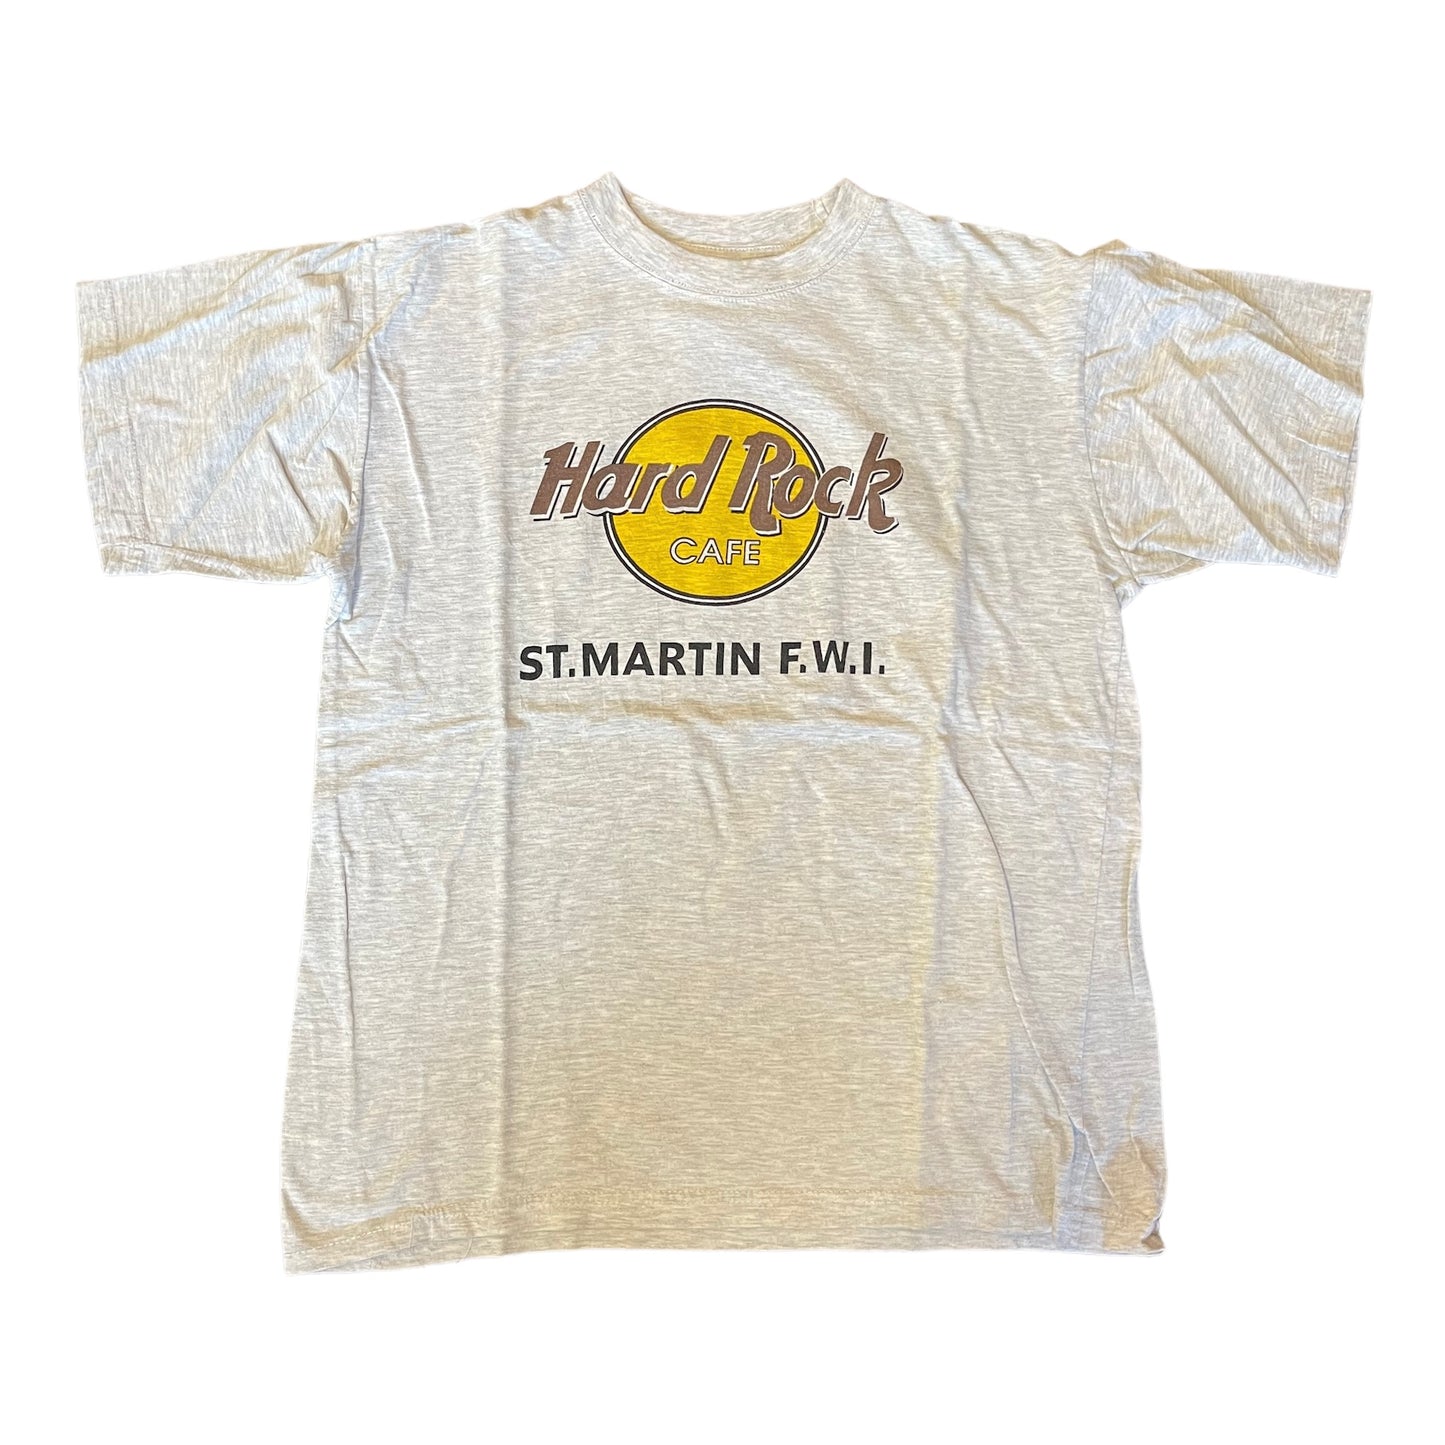 Hard Rock Cafe St. Martin F.W.I. Shirt